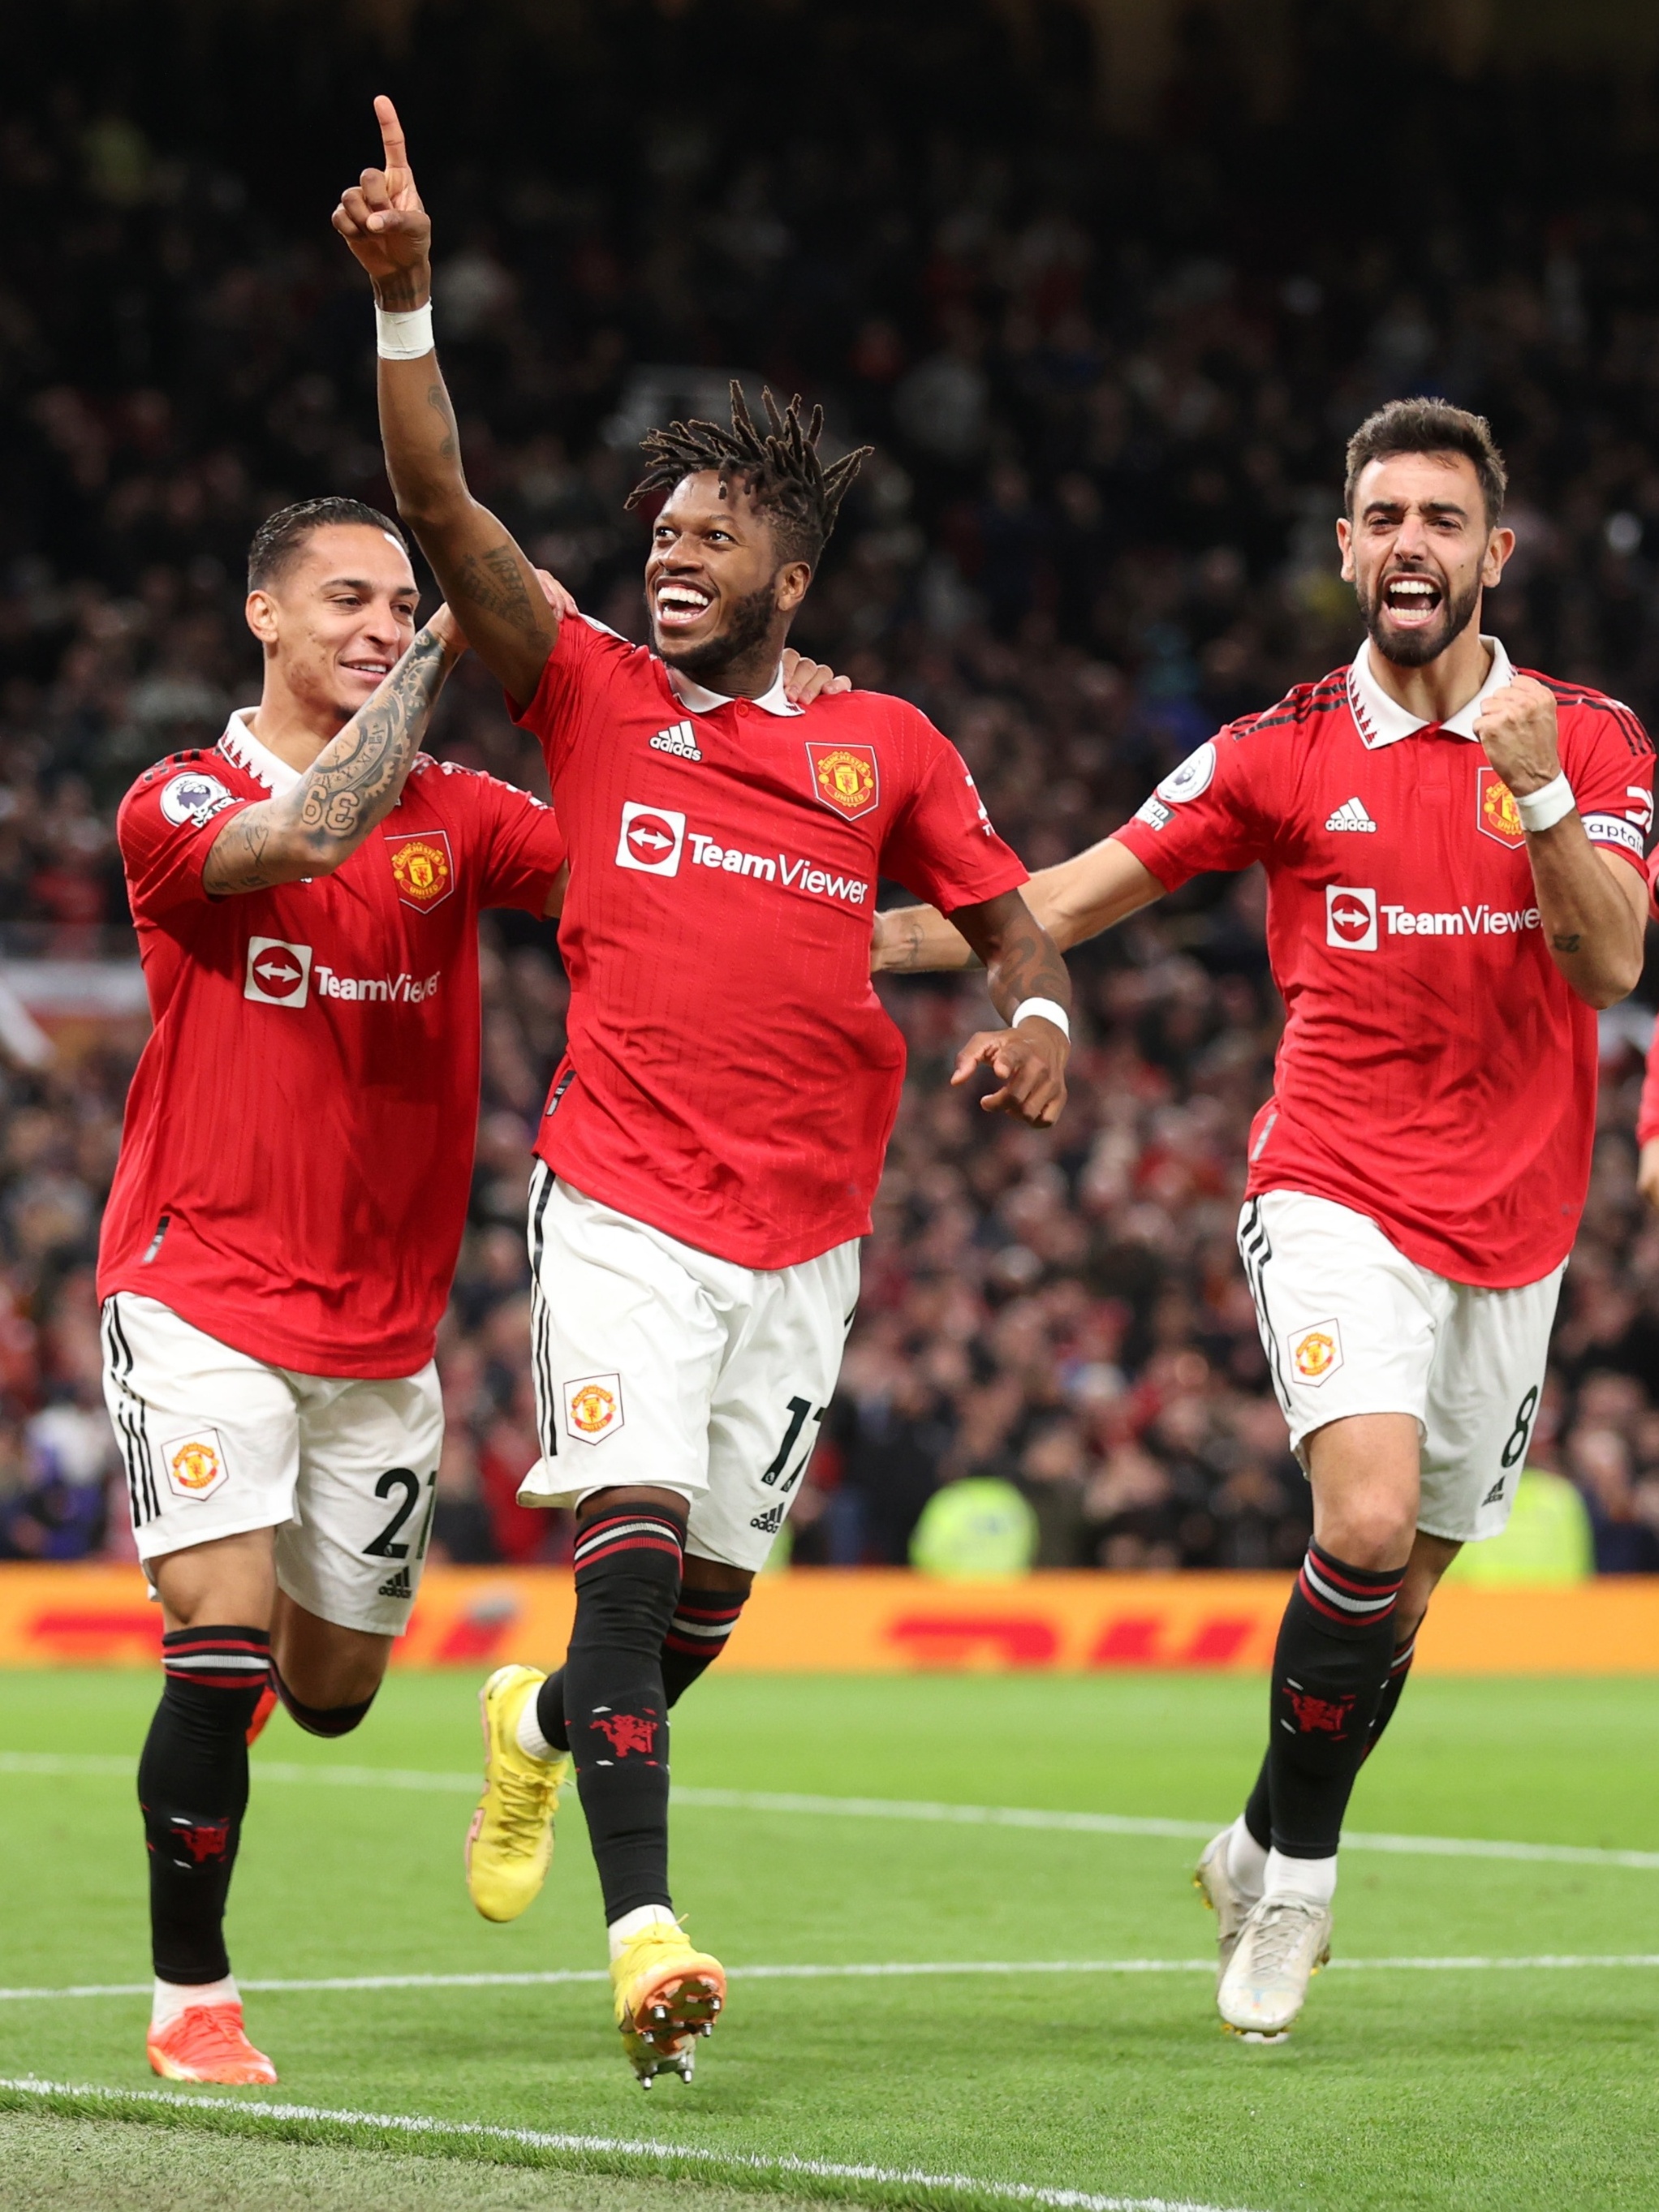 O Manchester United vence mais uma e - Doentes por Futebol